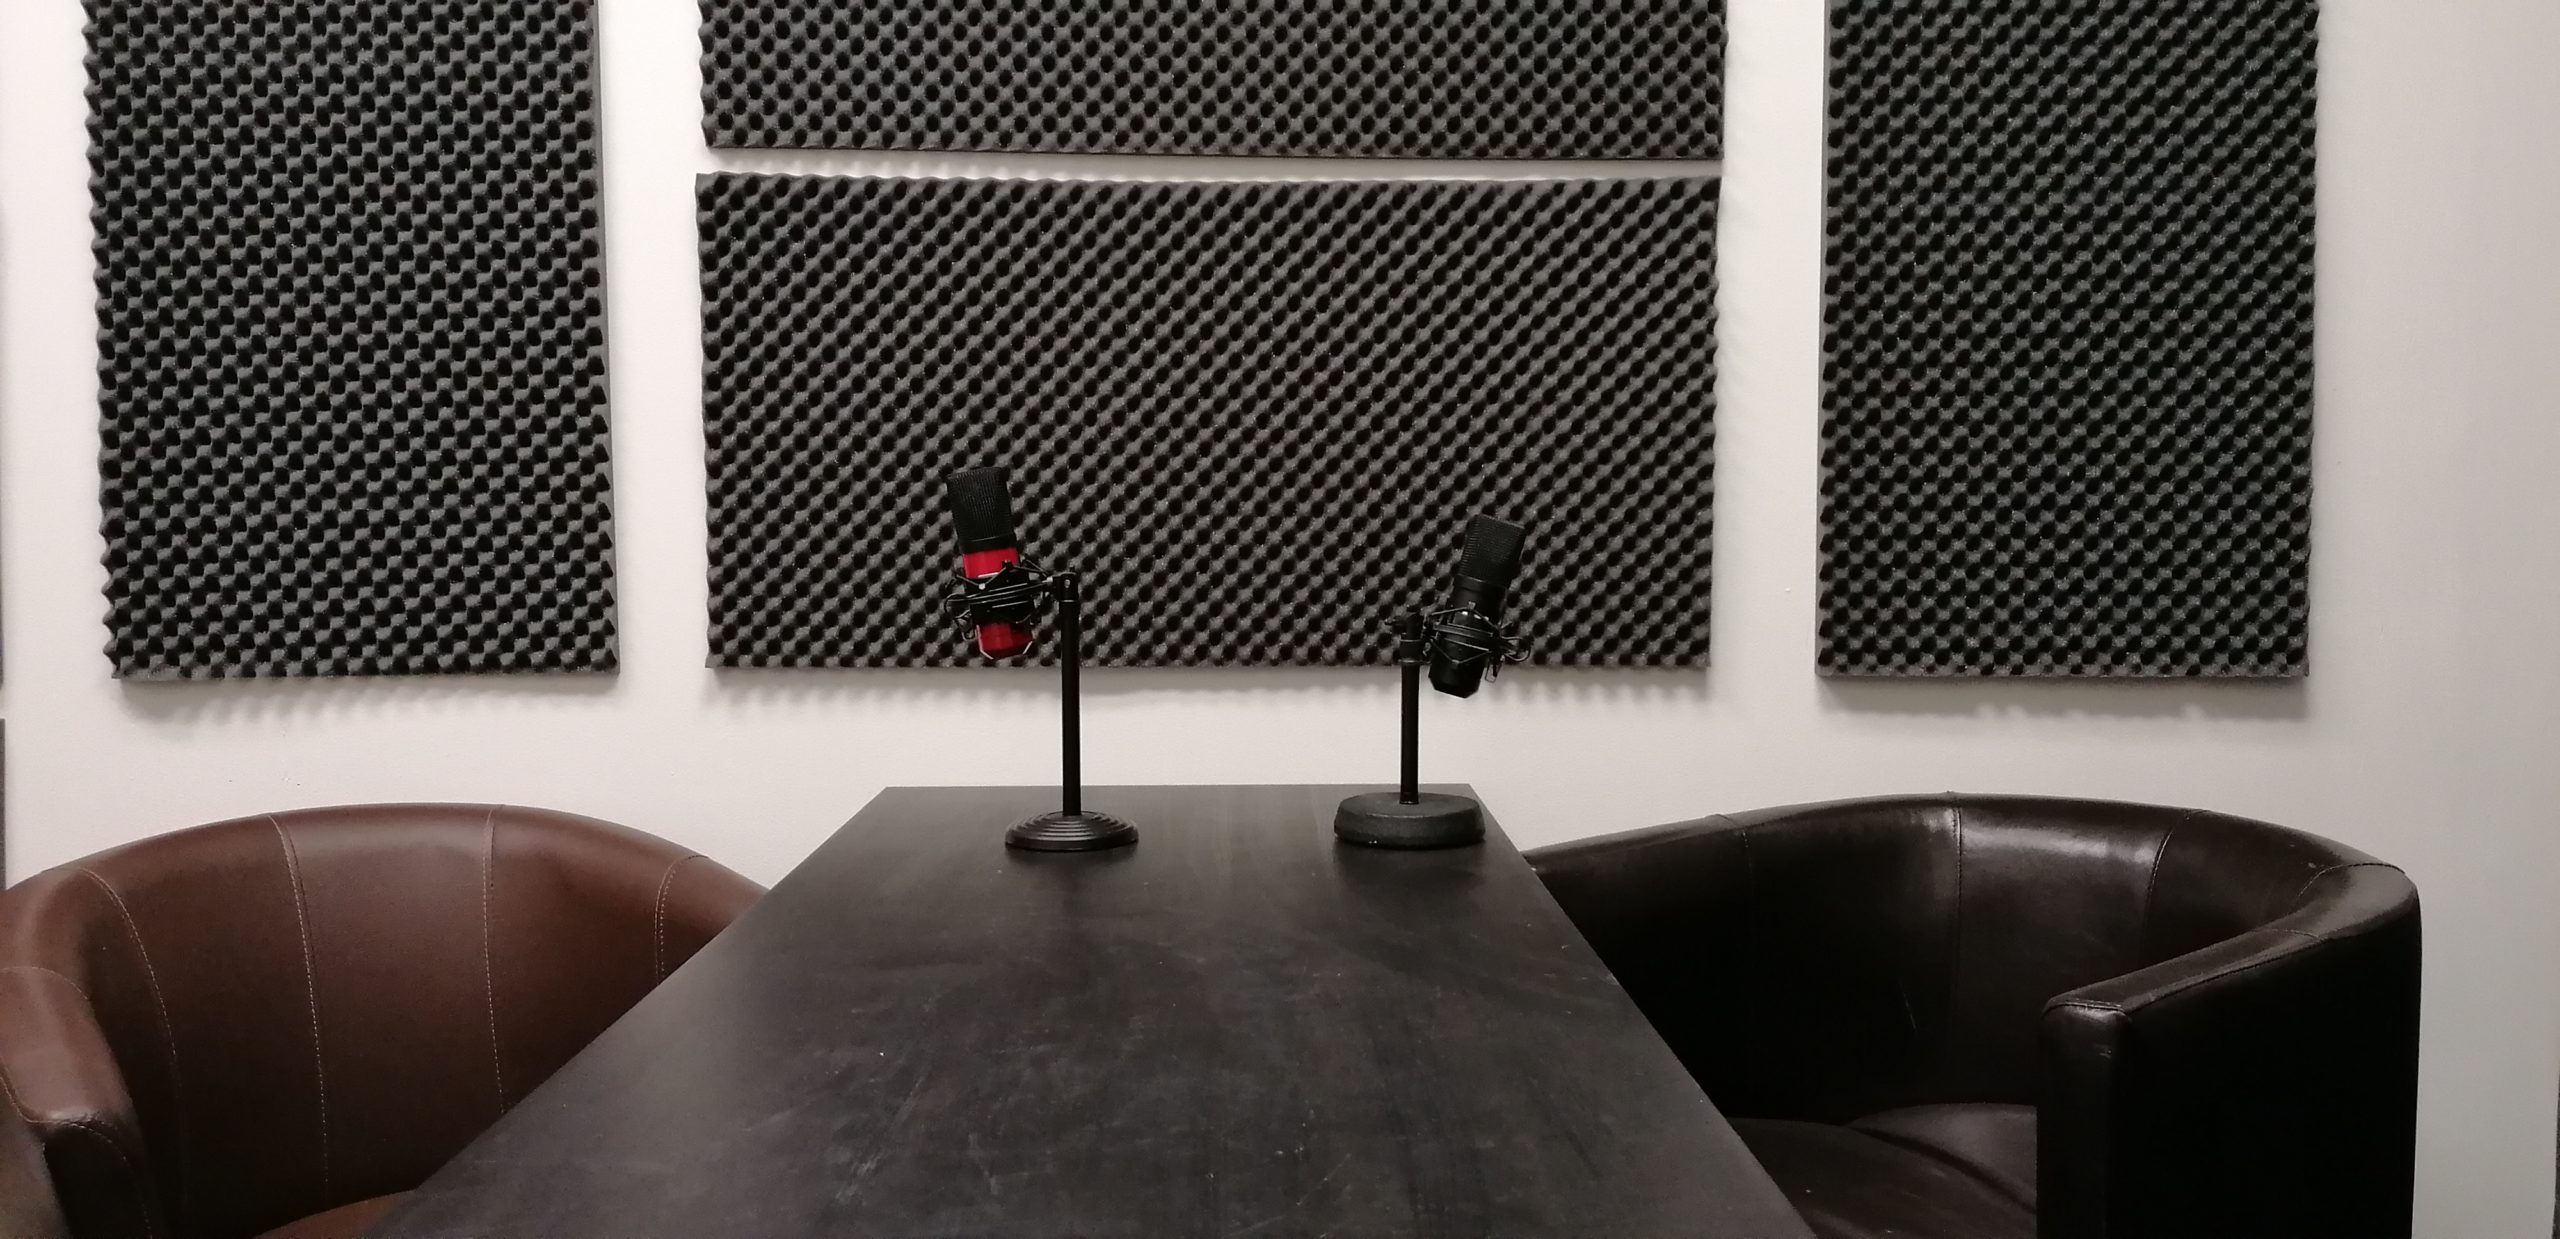 podcast studio setup